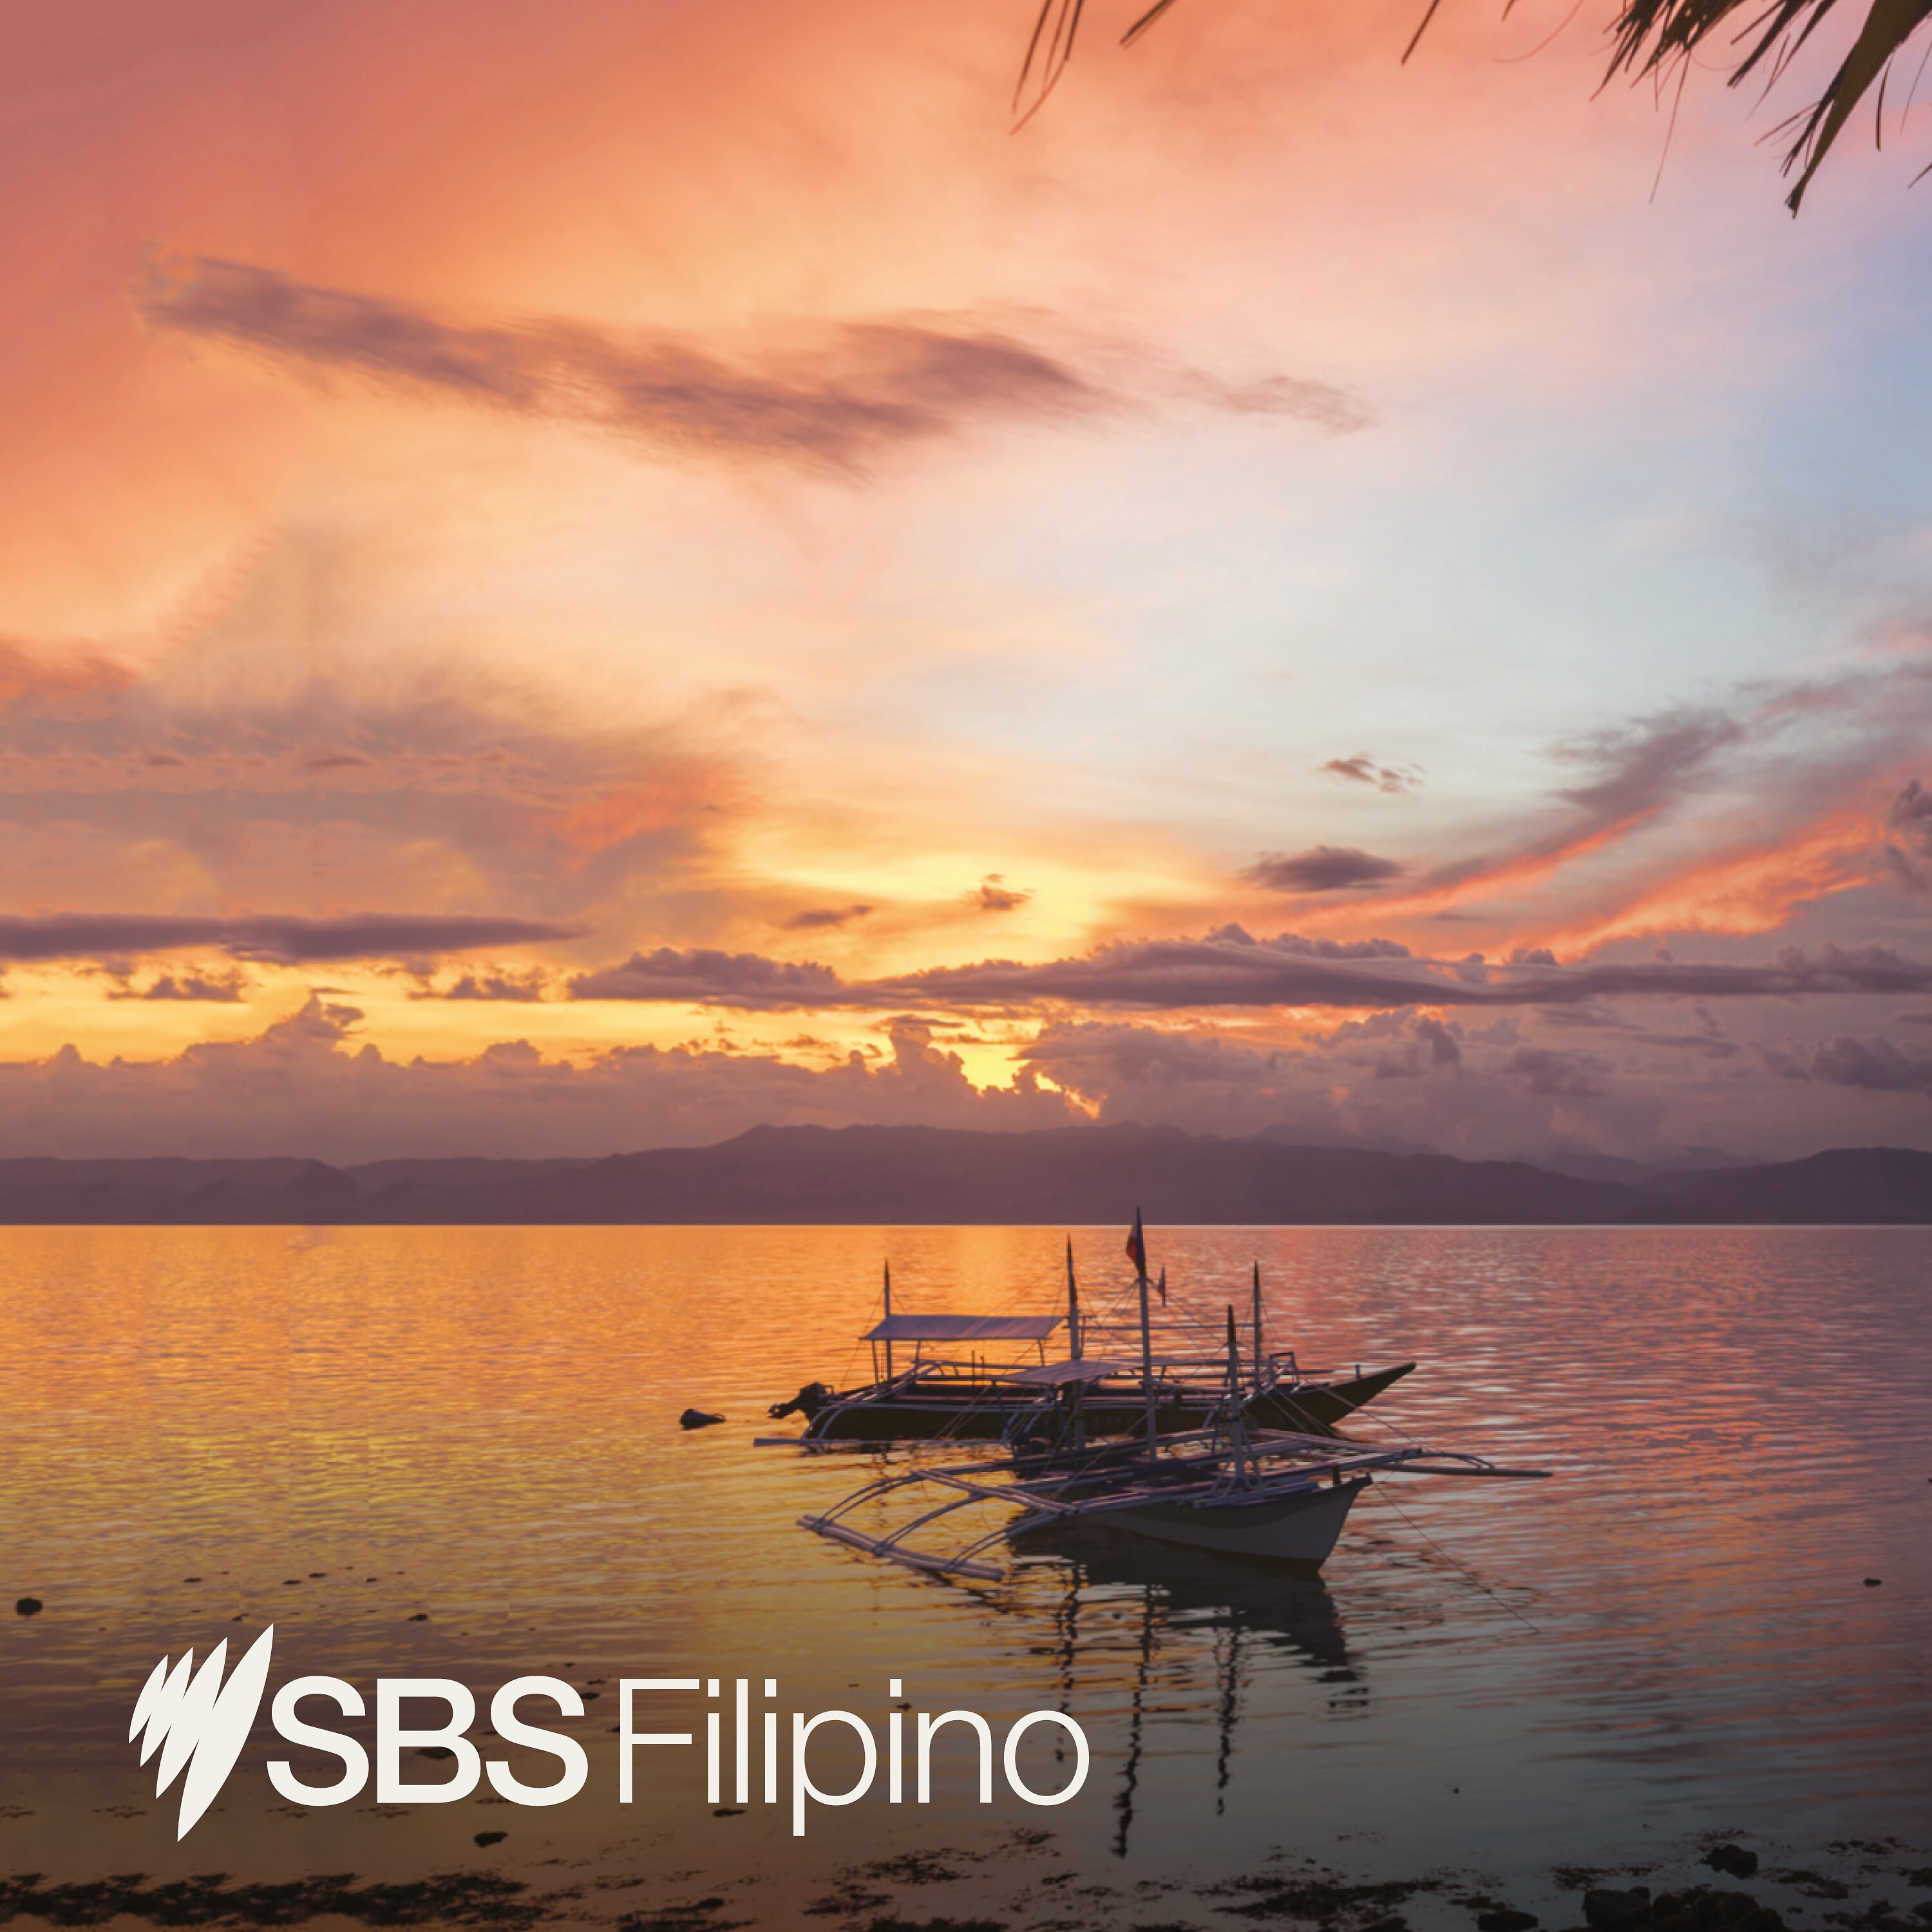 SBS Filipino - SBS Filipino